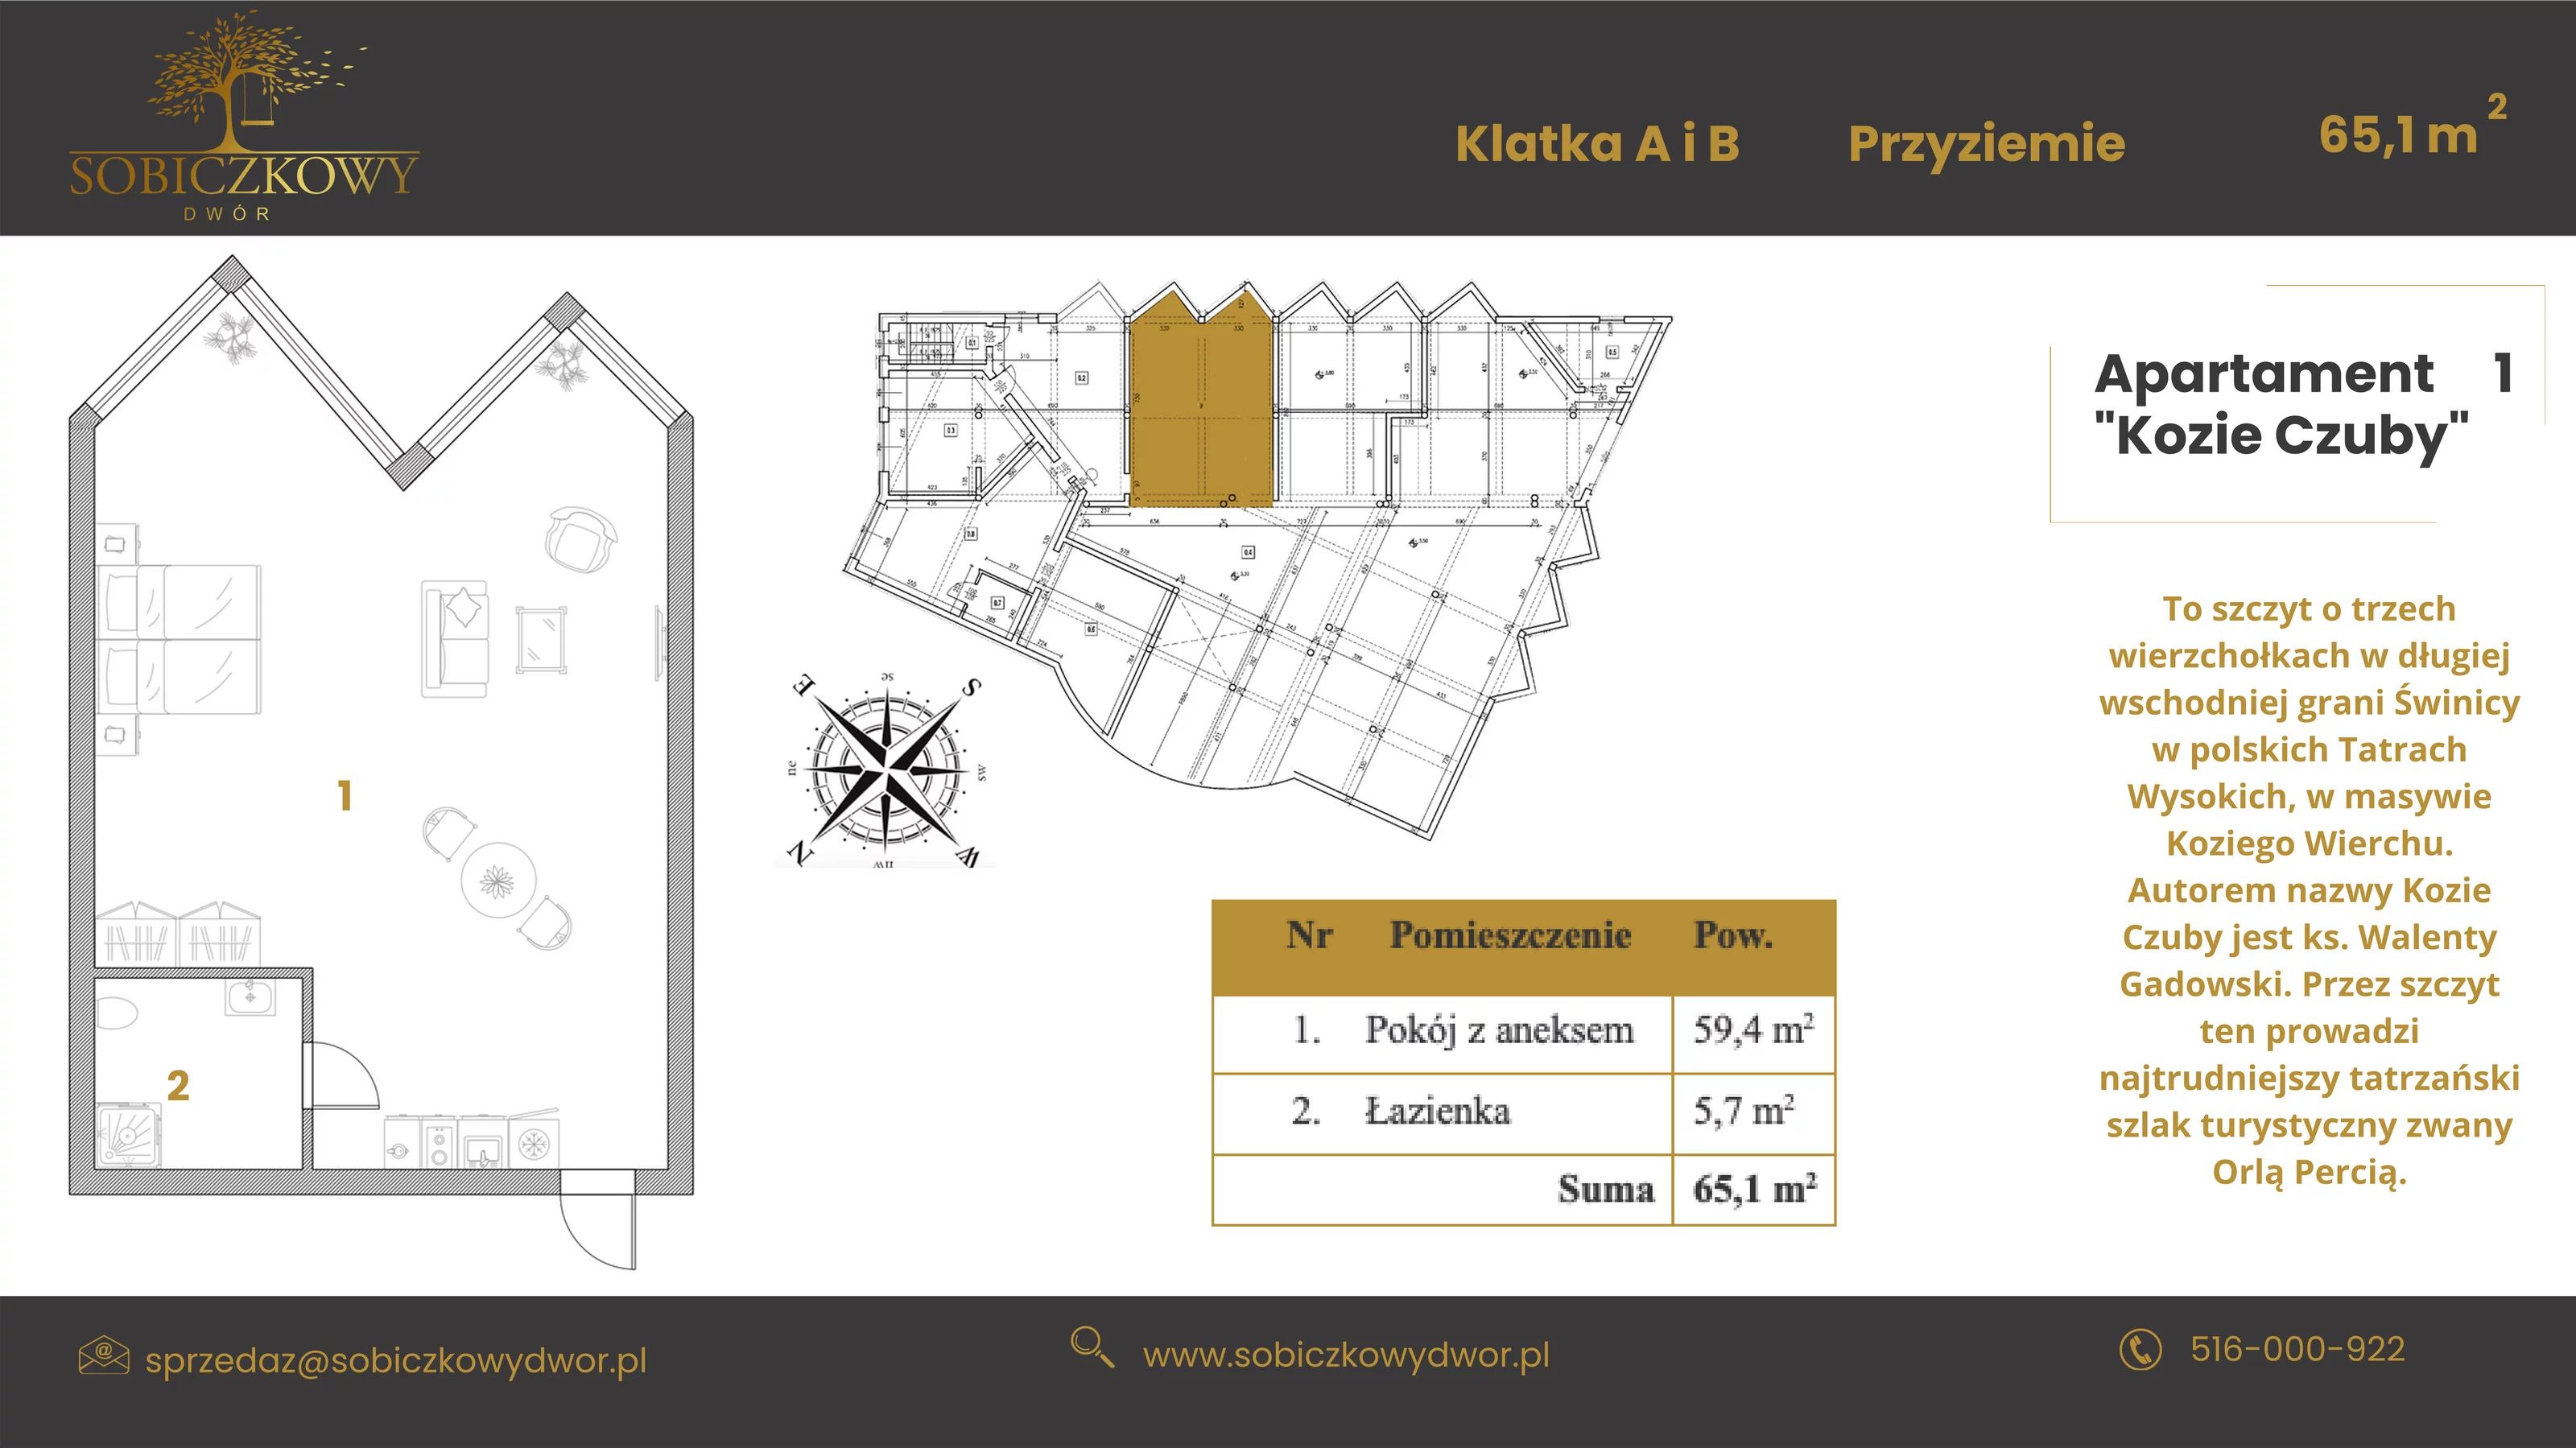 Apartament 65,10 m², poziom -1, oferta nr 1 "Kozie Czuby", Sobiczkowy Dwór, Kościelisko, ul. Sobiczkowa Bór 1